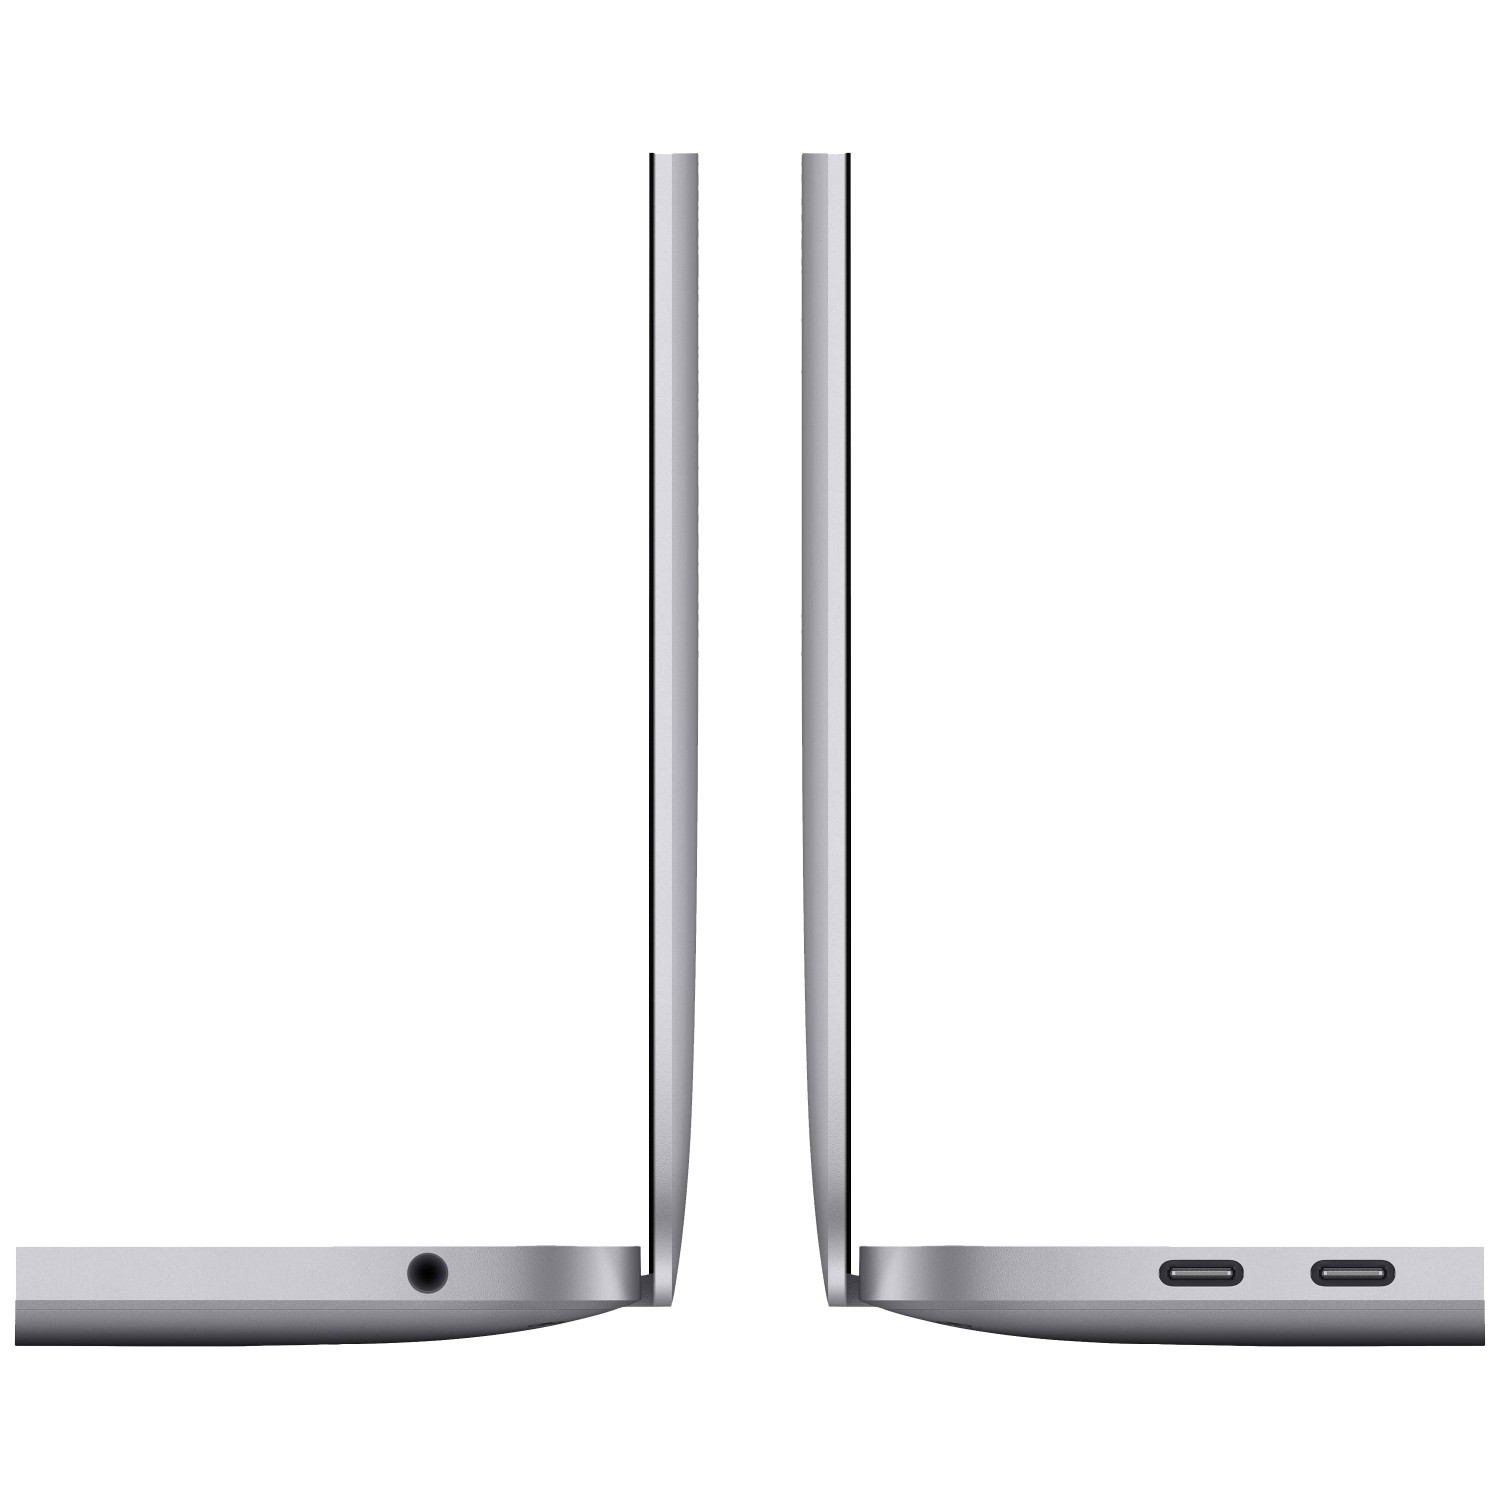 لپ تاپ Apple MacBook Pro 13 2020 CTO - Space Grey - F-4